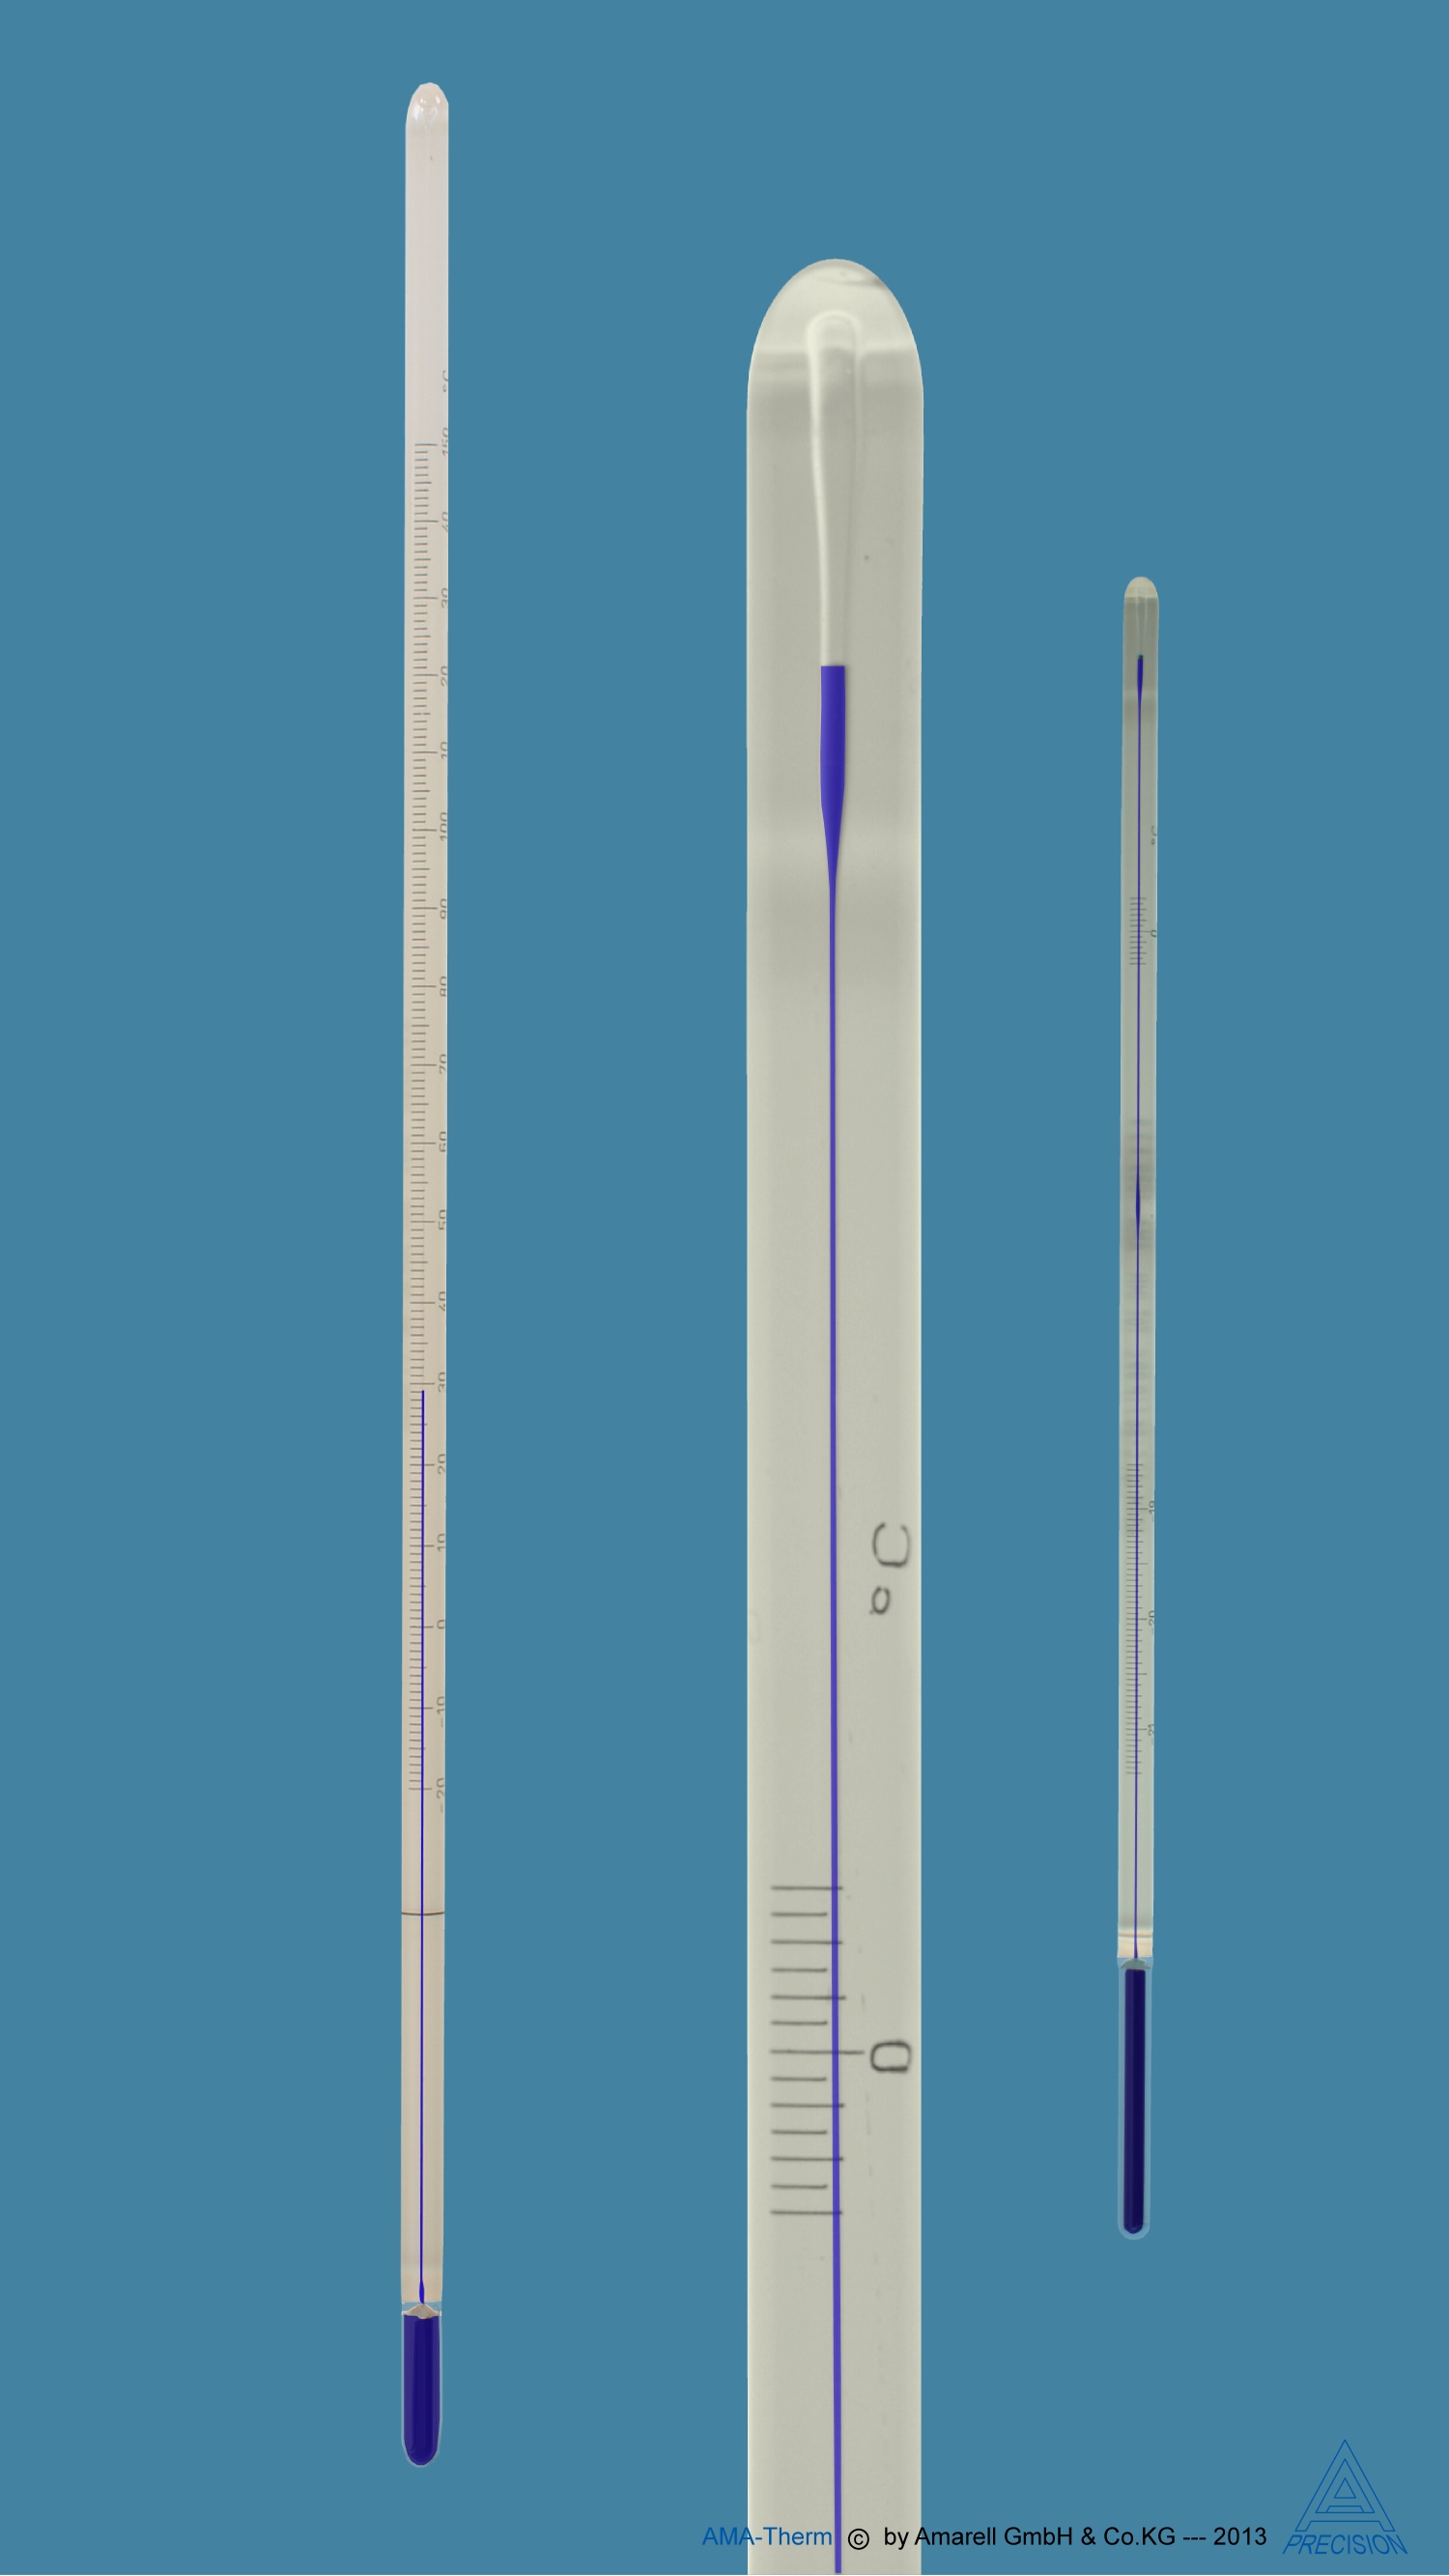 ASTM Thermometer, S120C, white backed, 38.6 + 41.4 : 0.05 deg C